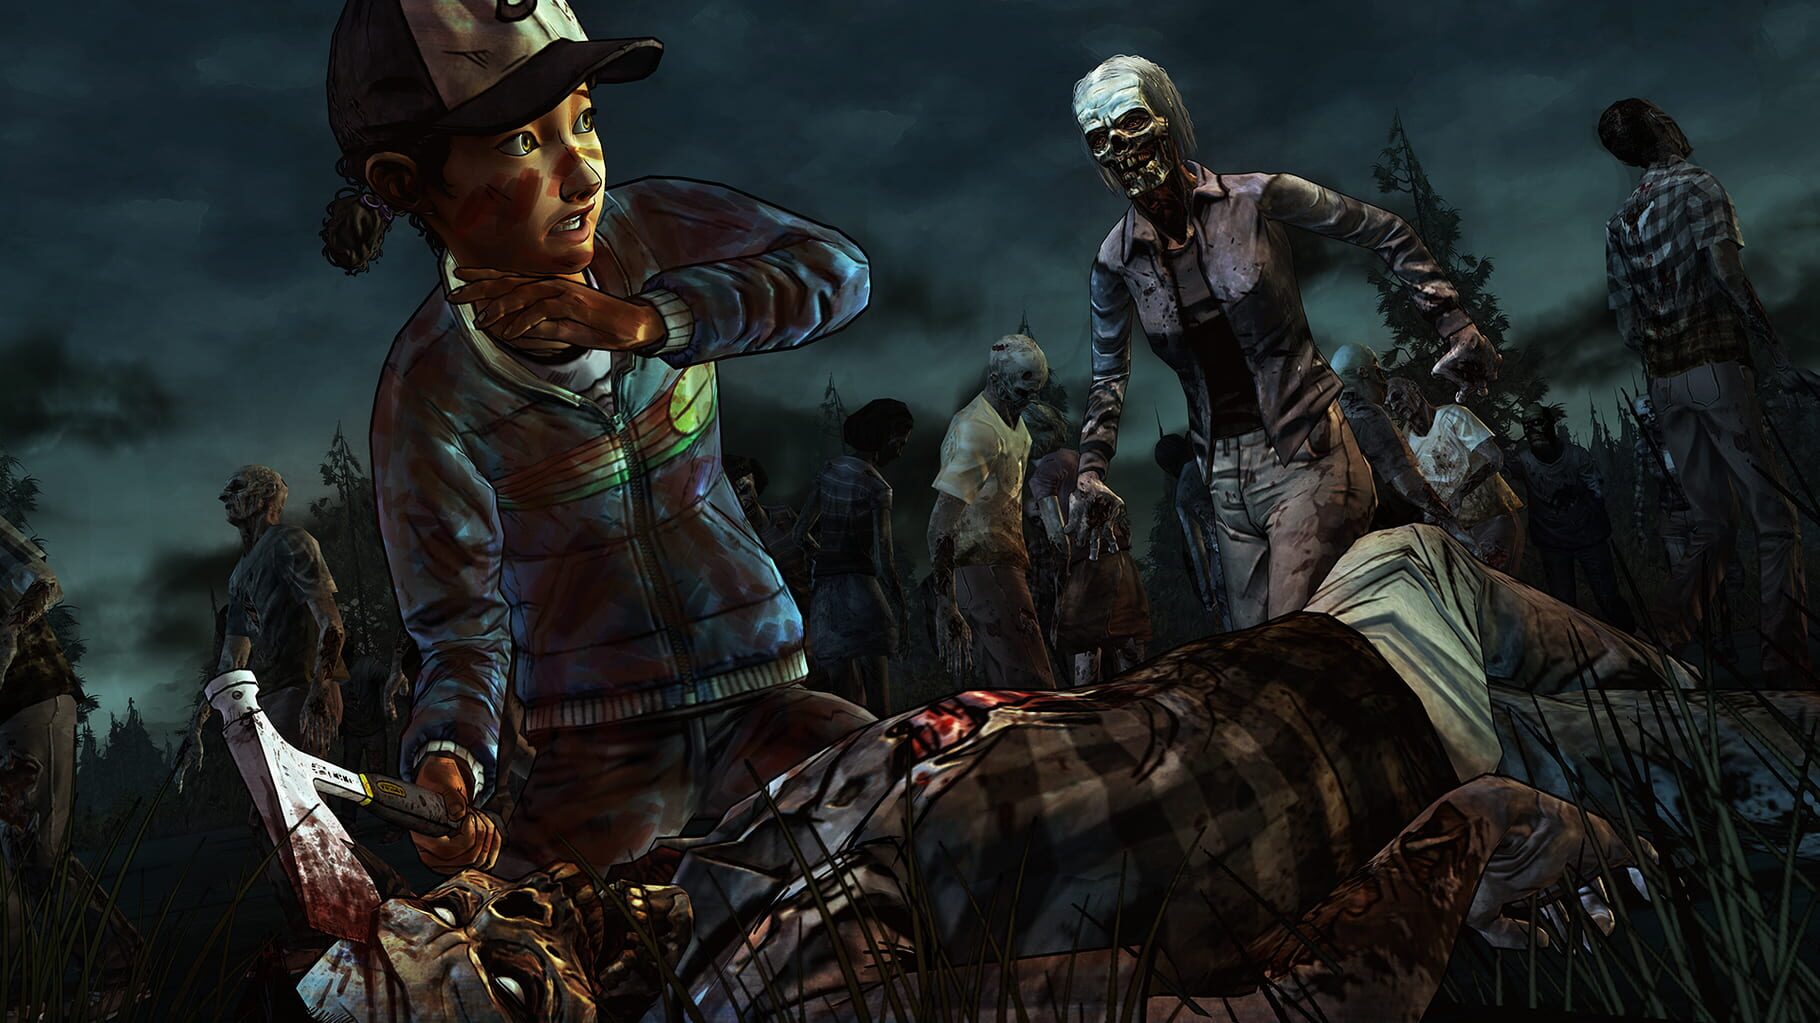 The Walking Dead: Season Two screenshots